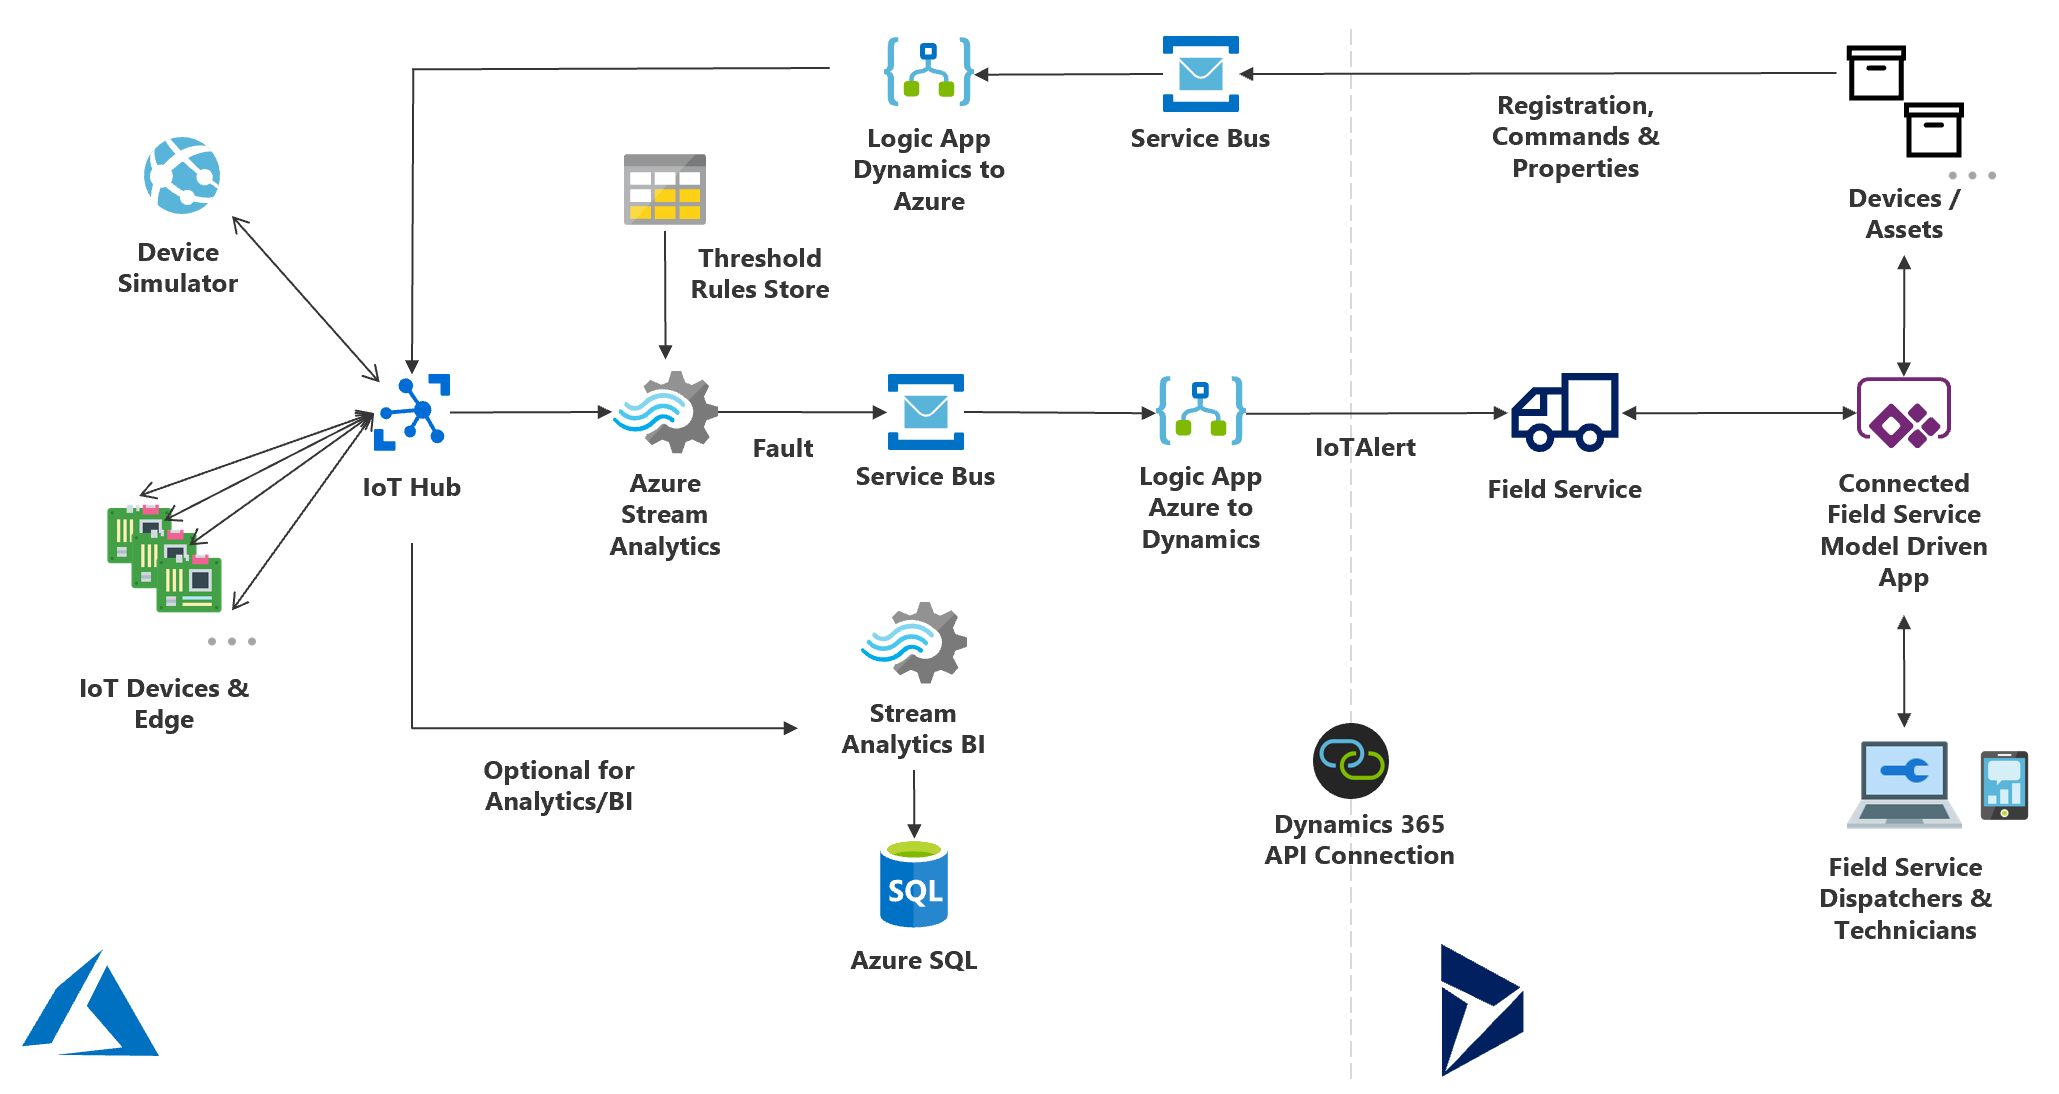 Diagrama que ilustra os componentes do Connected Field Service com o Hub IoT e as ligações entre eles.